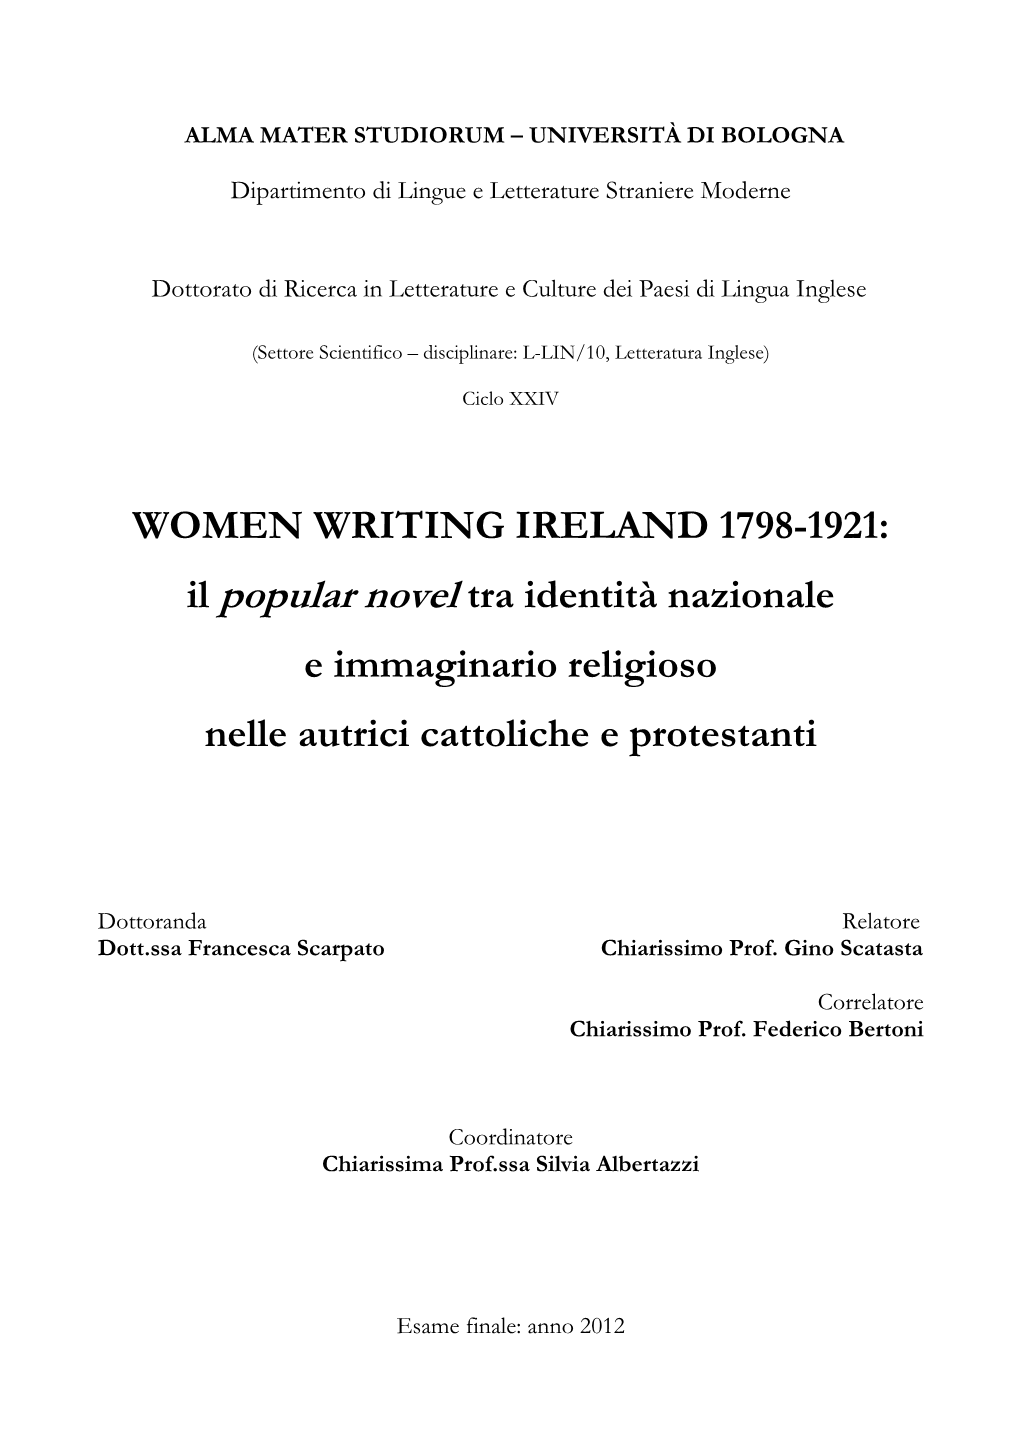 WOMEN WRITING IRELAND 1798-1921: Il Popular Novel Tra Identità Nazionale E Immaginario Religioso Nelle Autrici Cattoliche E Protestanti